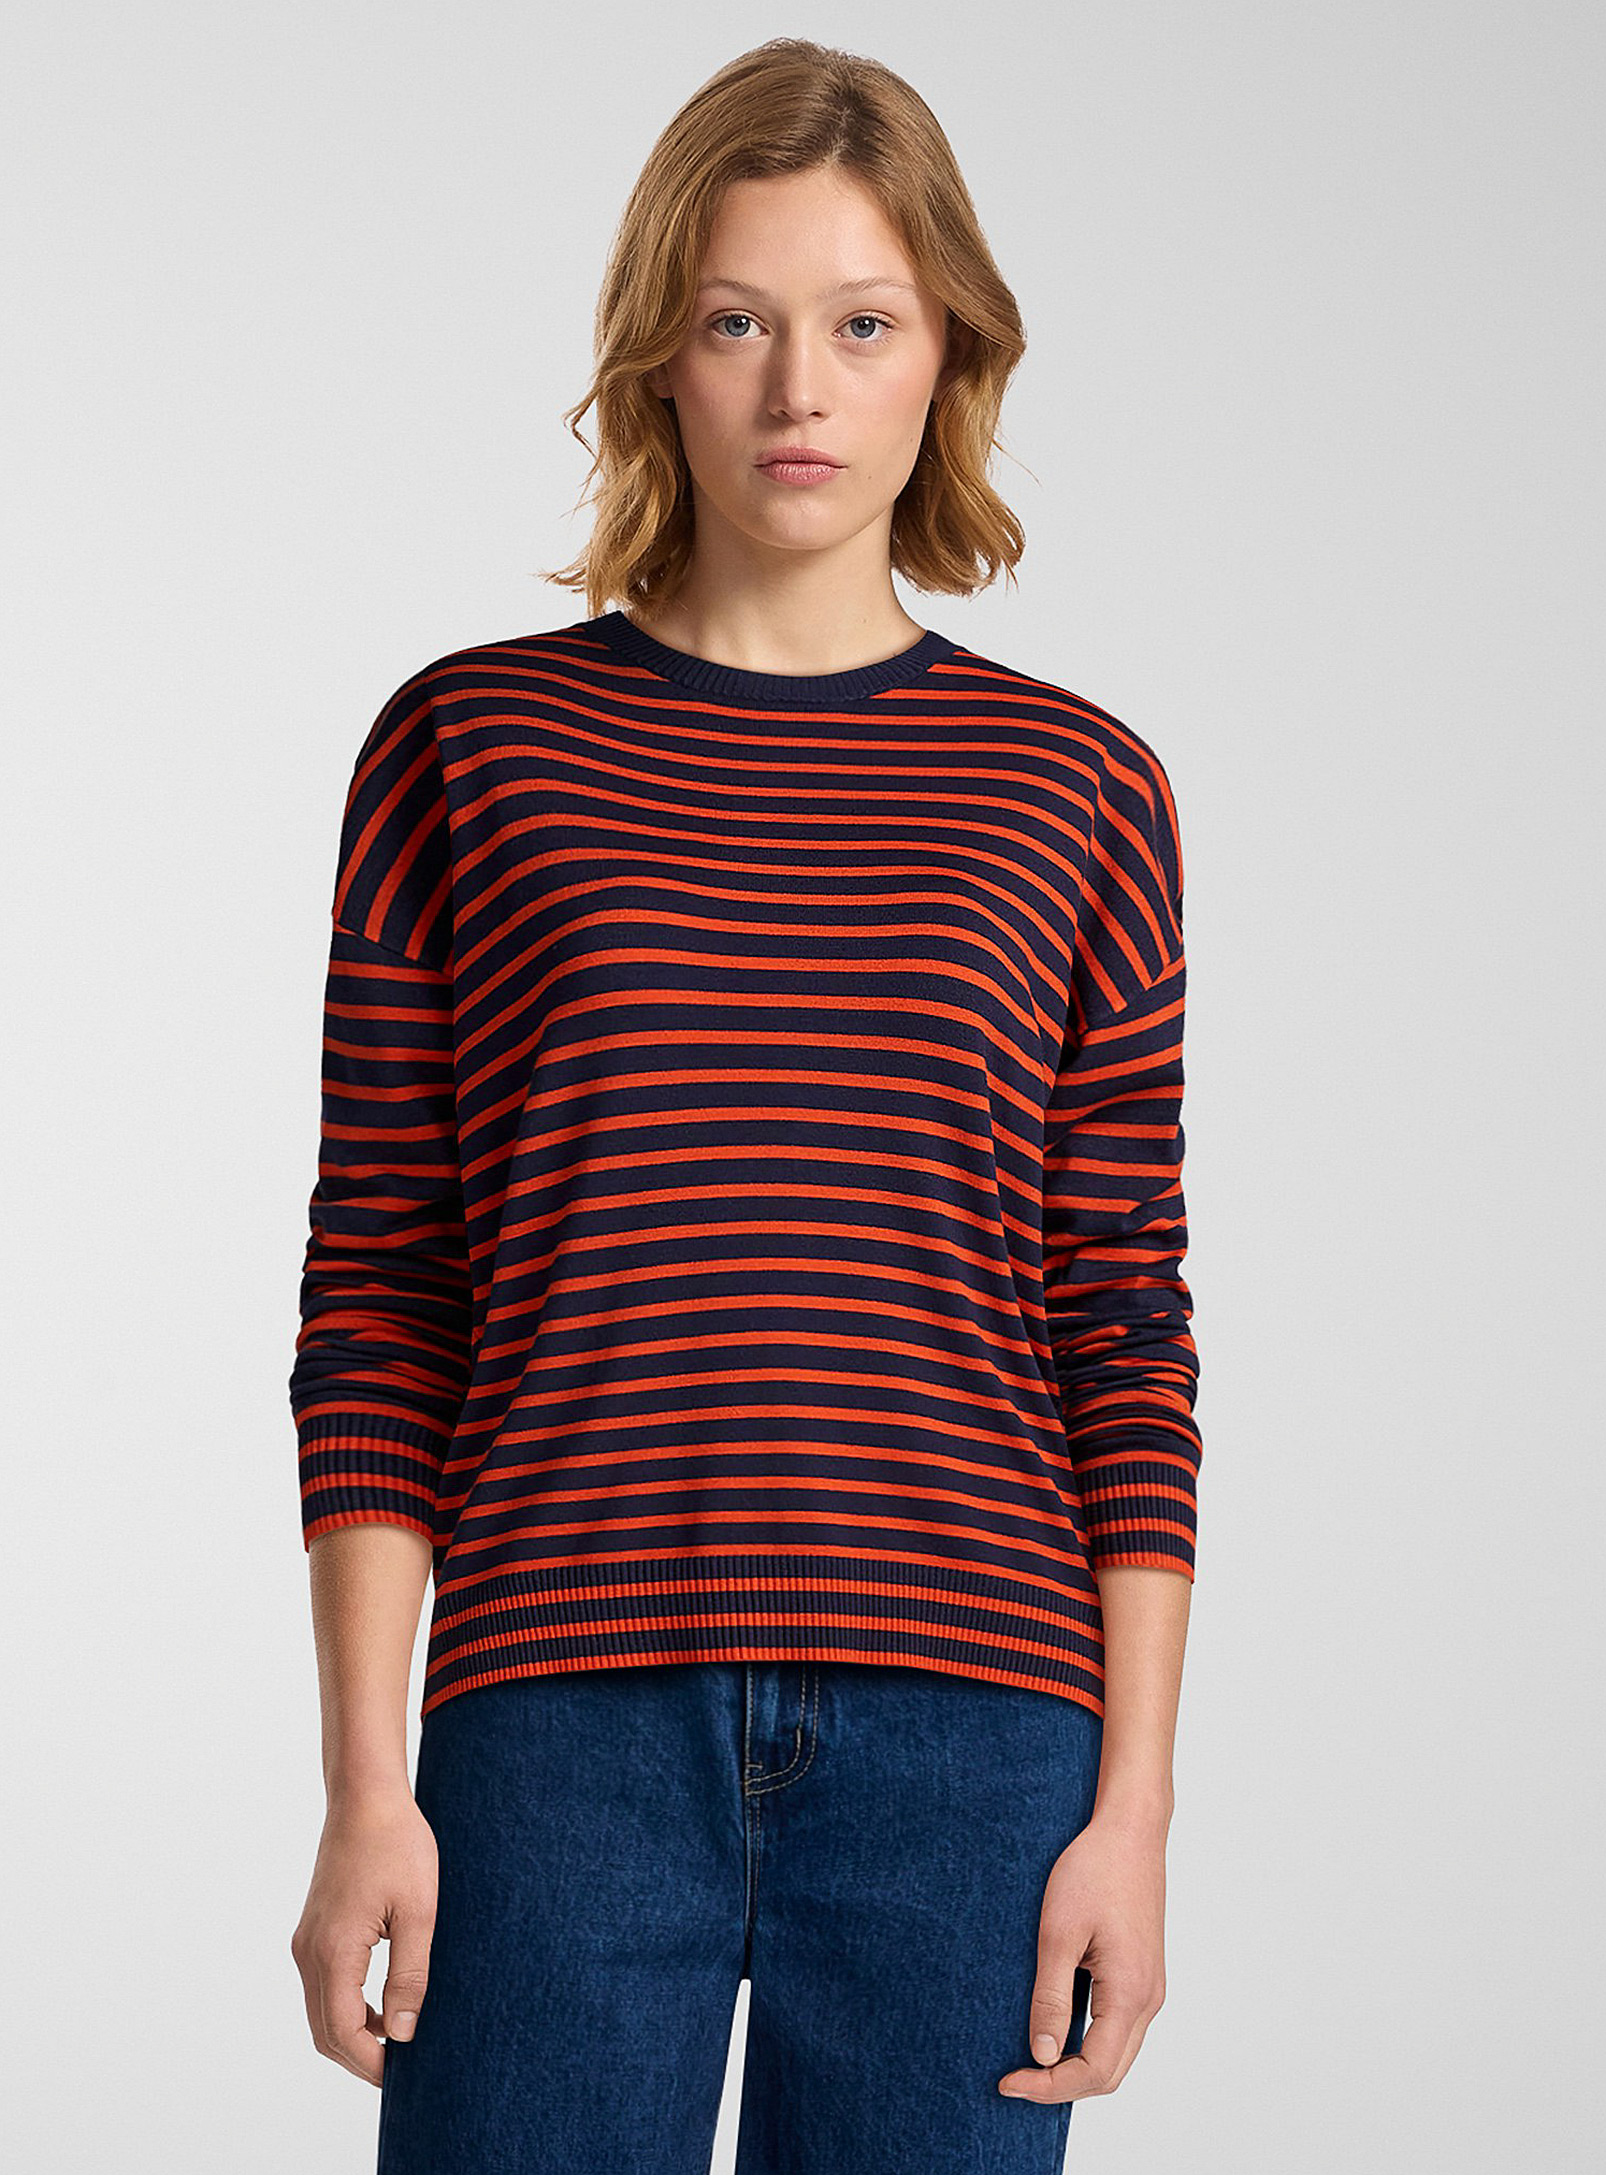 Twik Oversized Striped Sweater In Patterned Blue